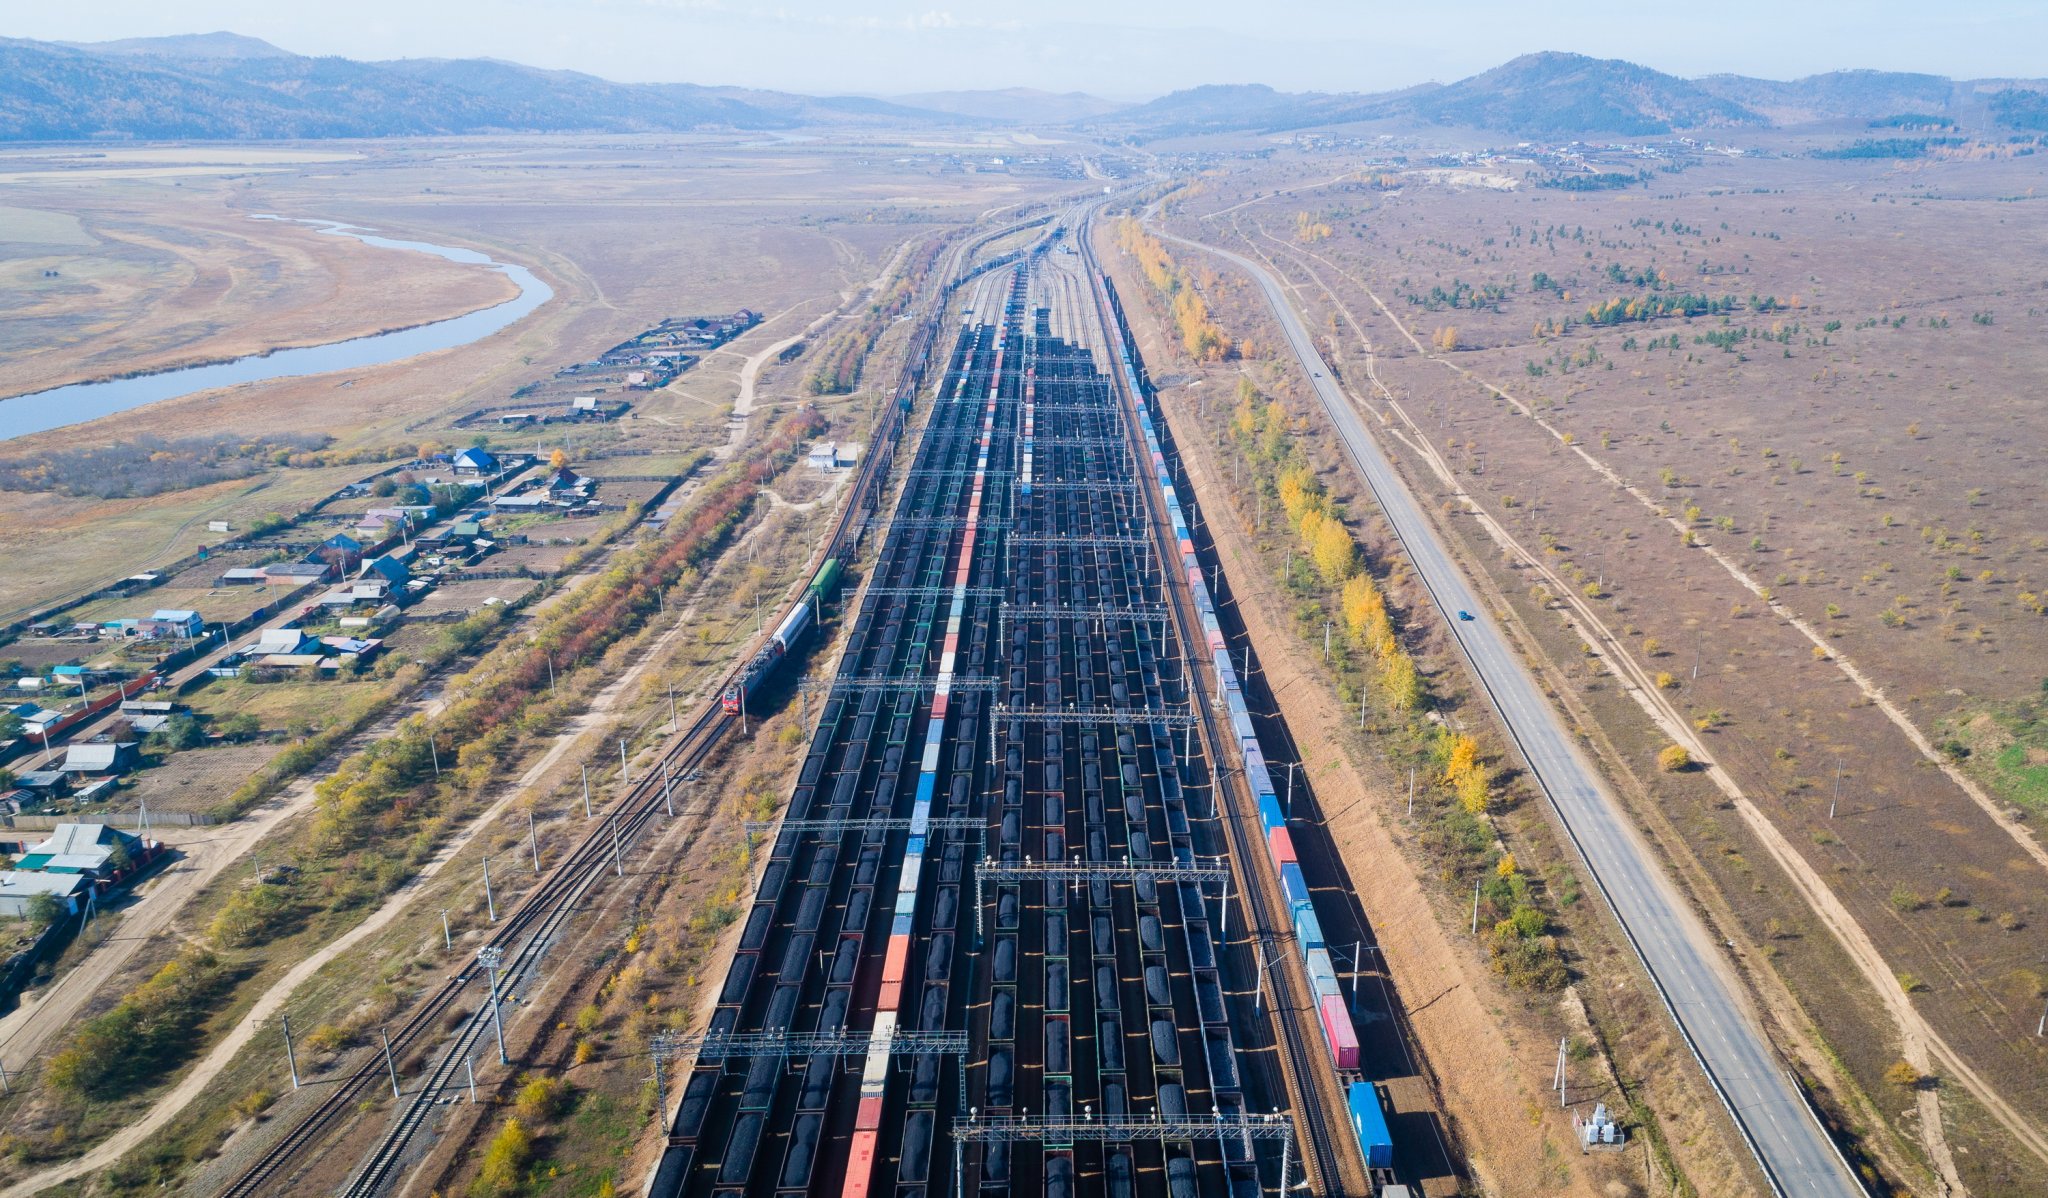 ЗабЖД обеспечила перевозку более 1,2 млн тонн угля в адрес предприятий ЖКХ в период отопительного сезона